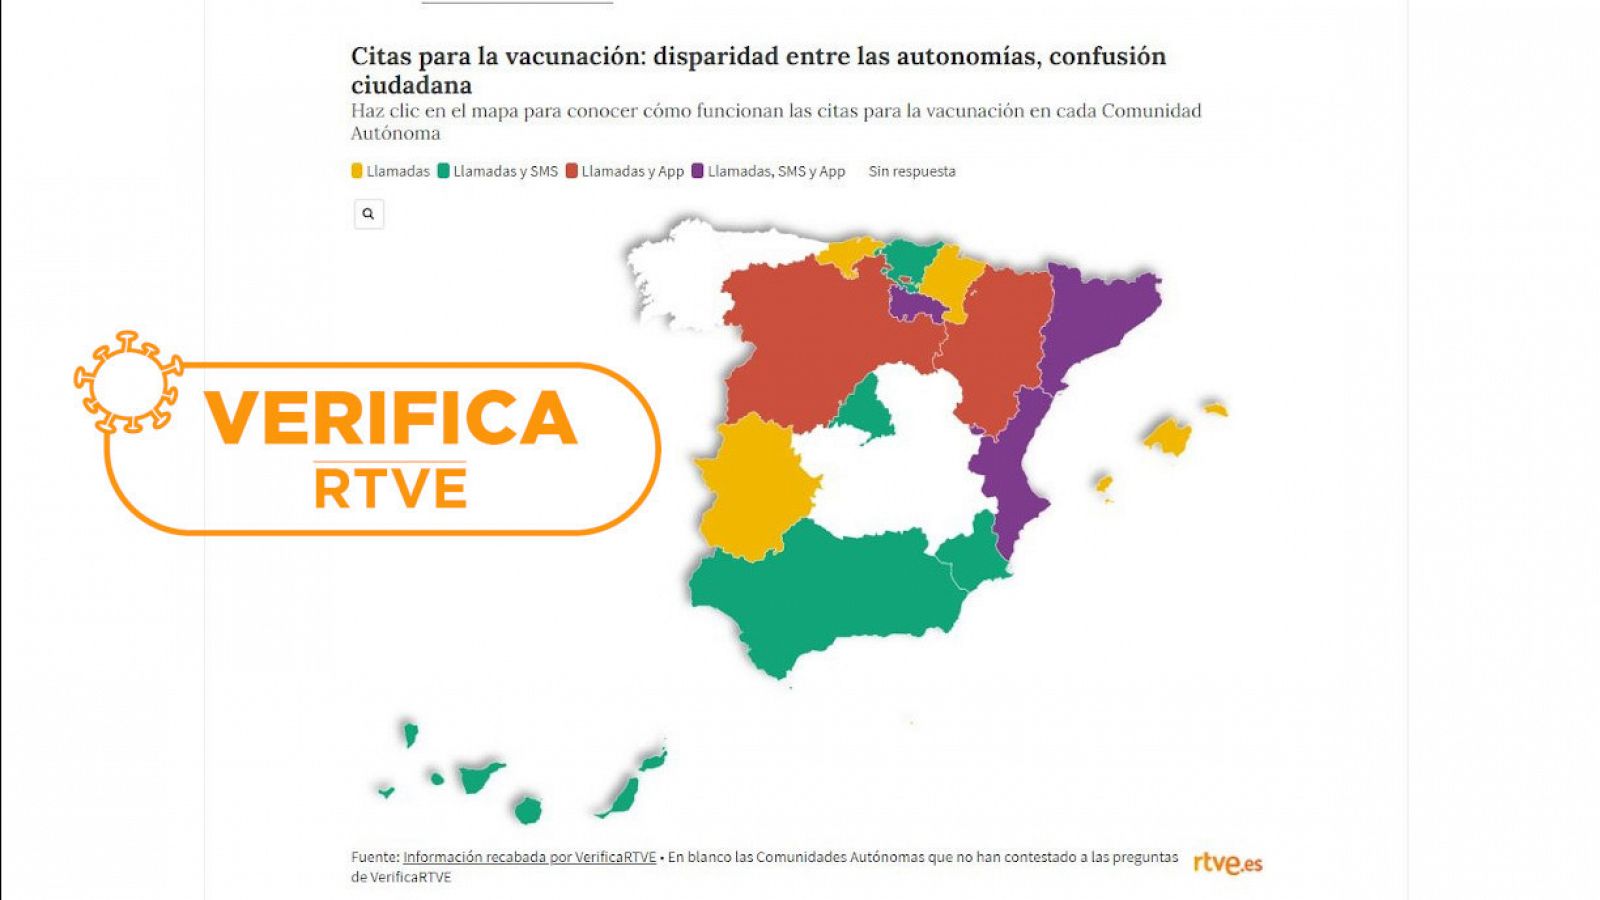 Mapa de España por colores con los tipos de citación para la vacuna contra la COVID-19 con el sello de VerificaRTVE